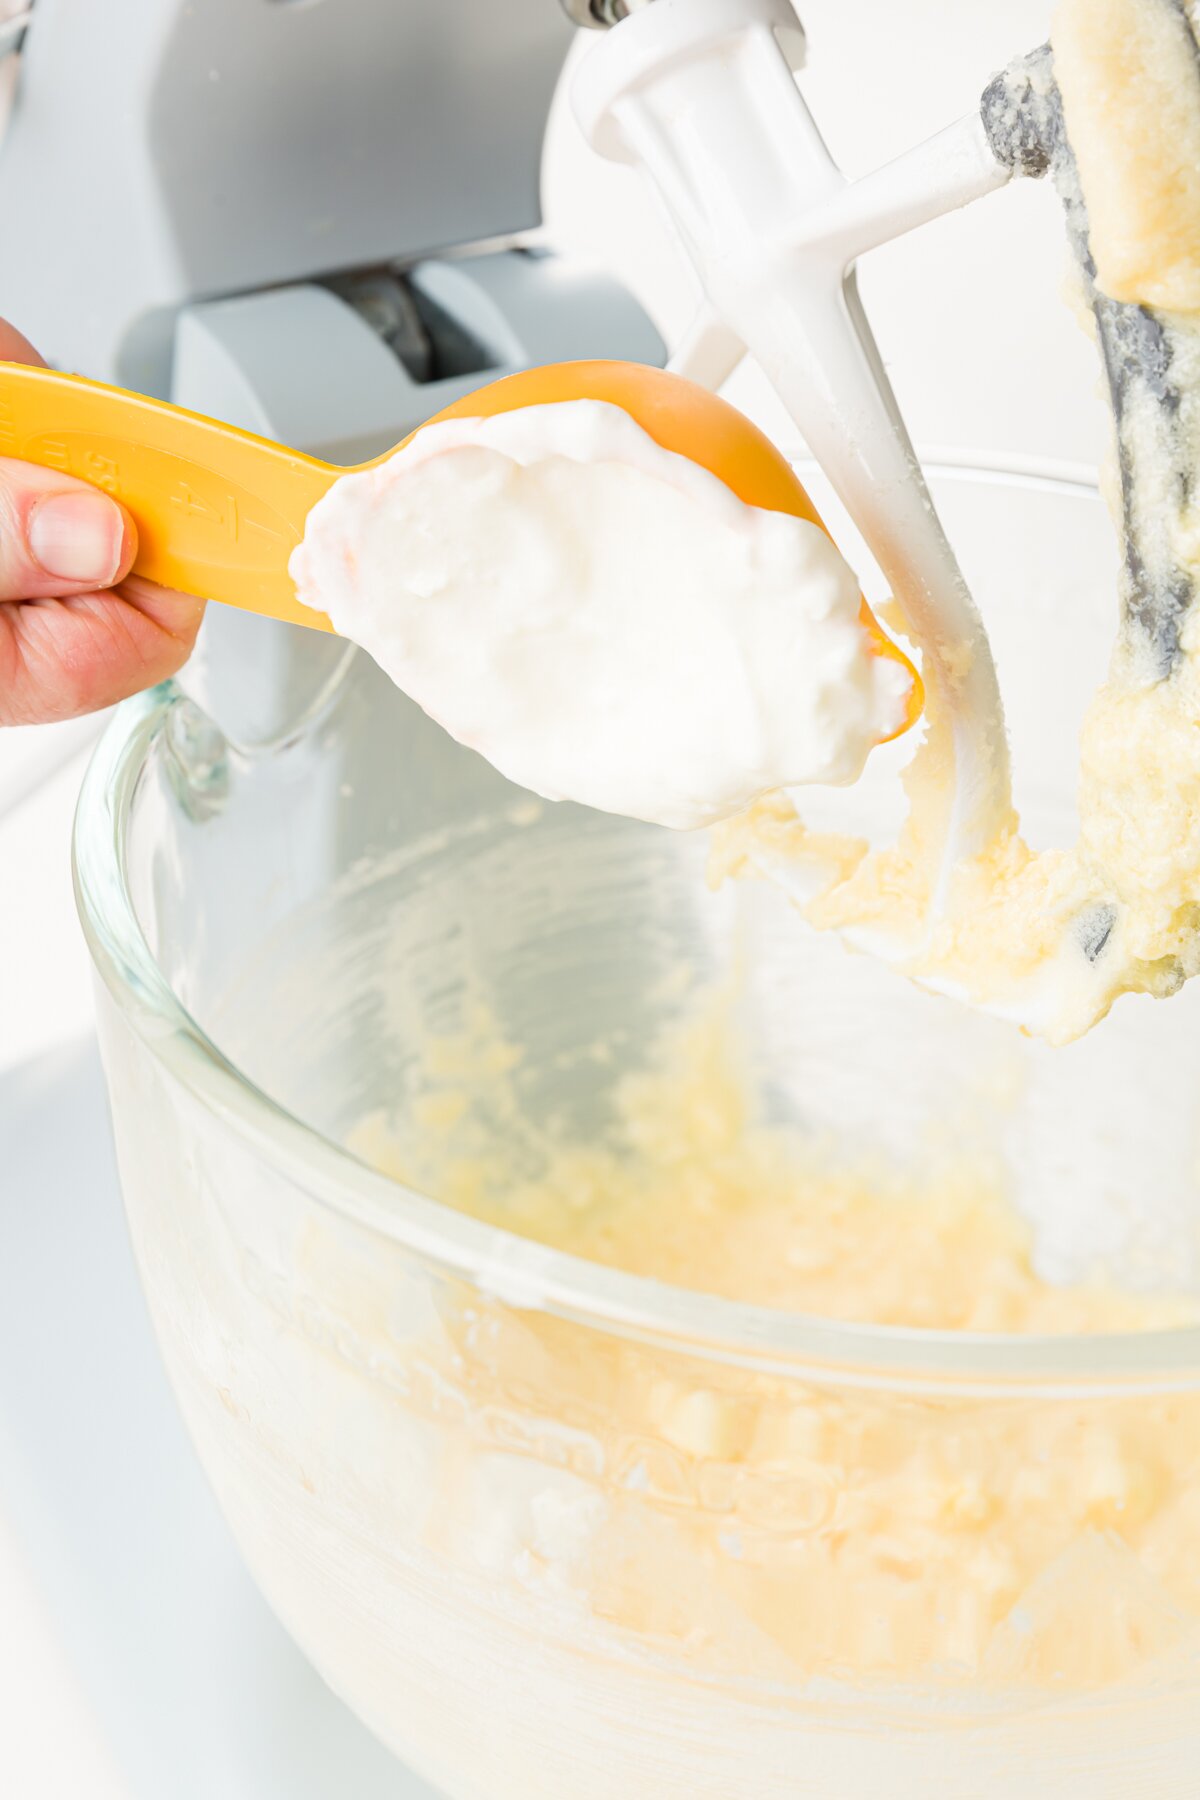 Adding sour cream to kitchen aid mixing bowl